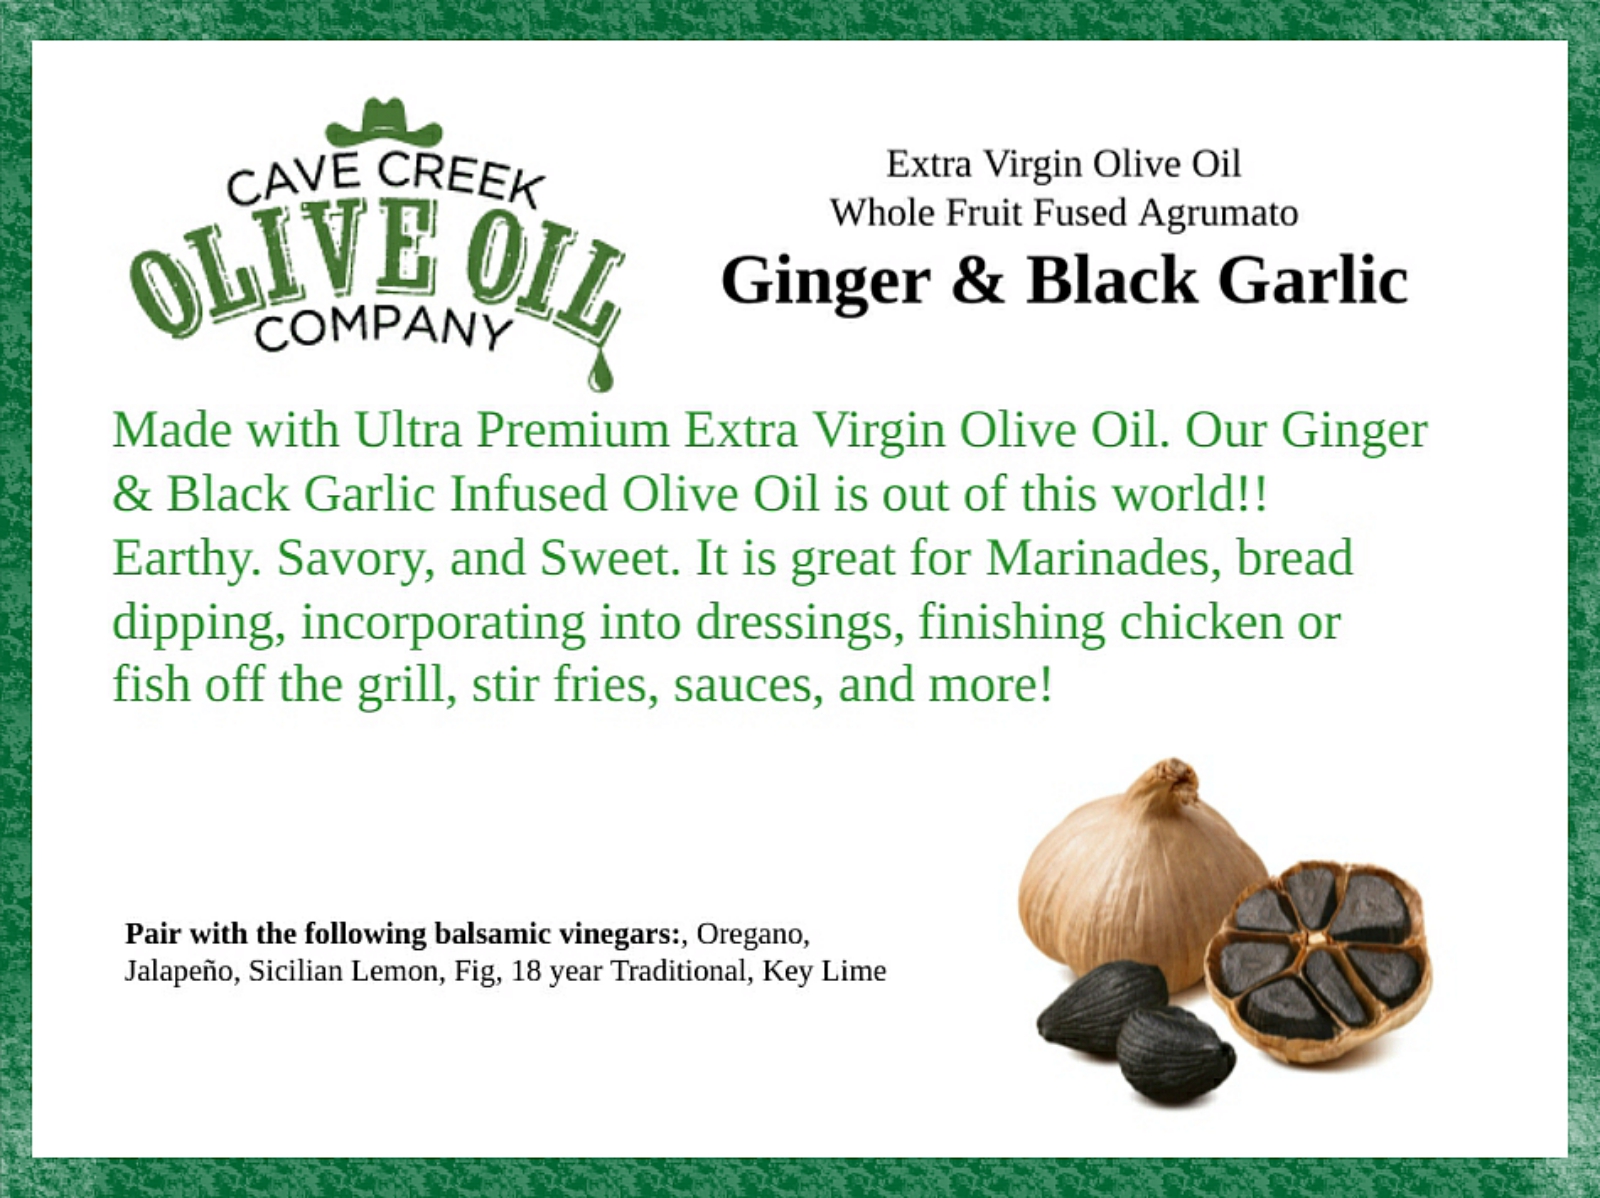 Ginger & Black Garlic Infused Olive Oil